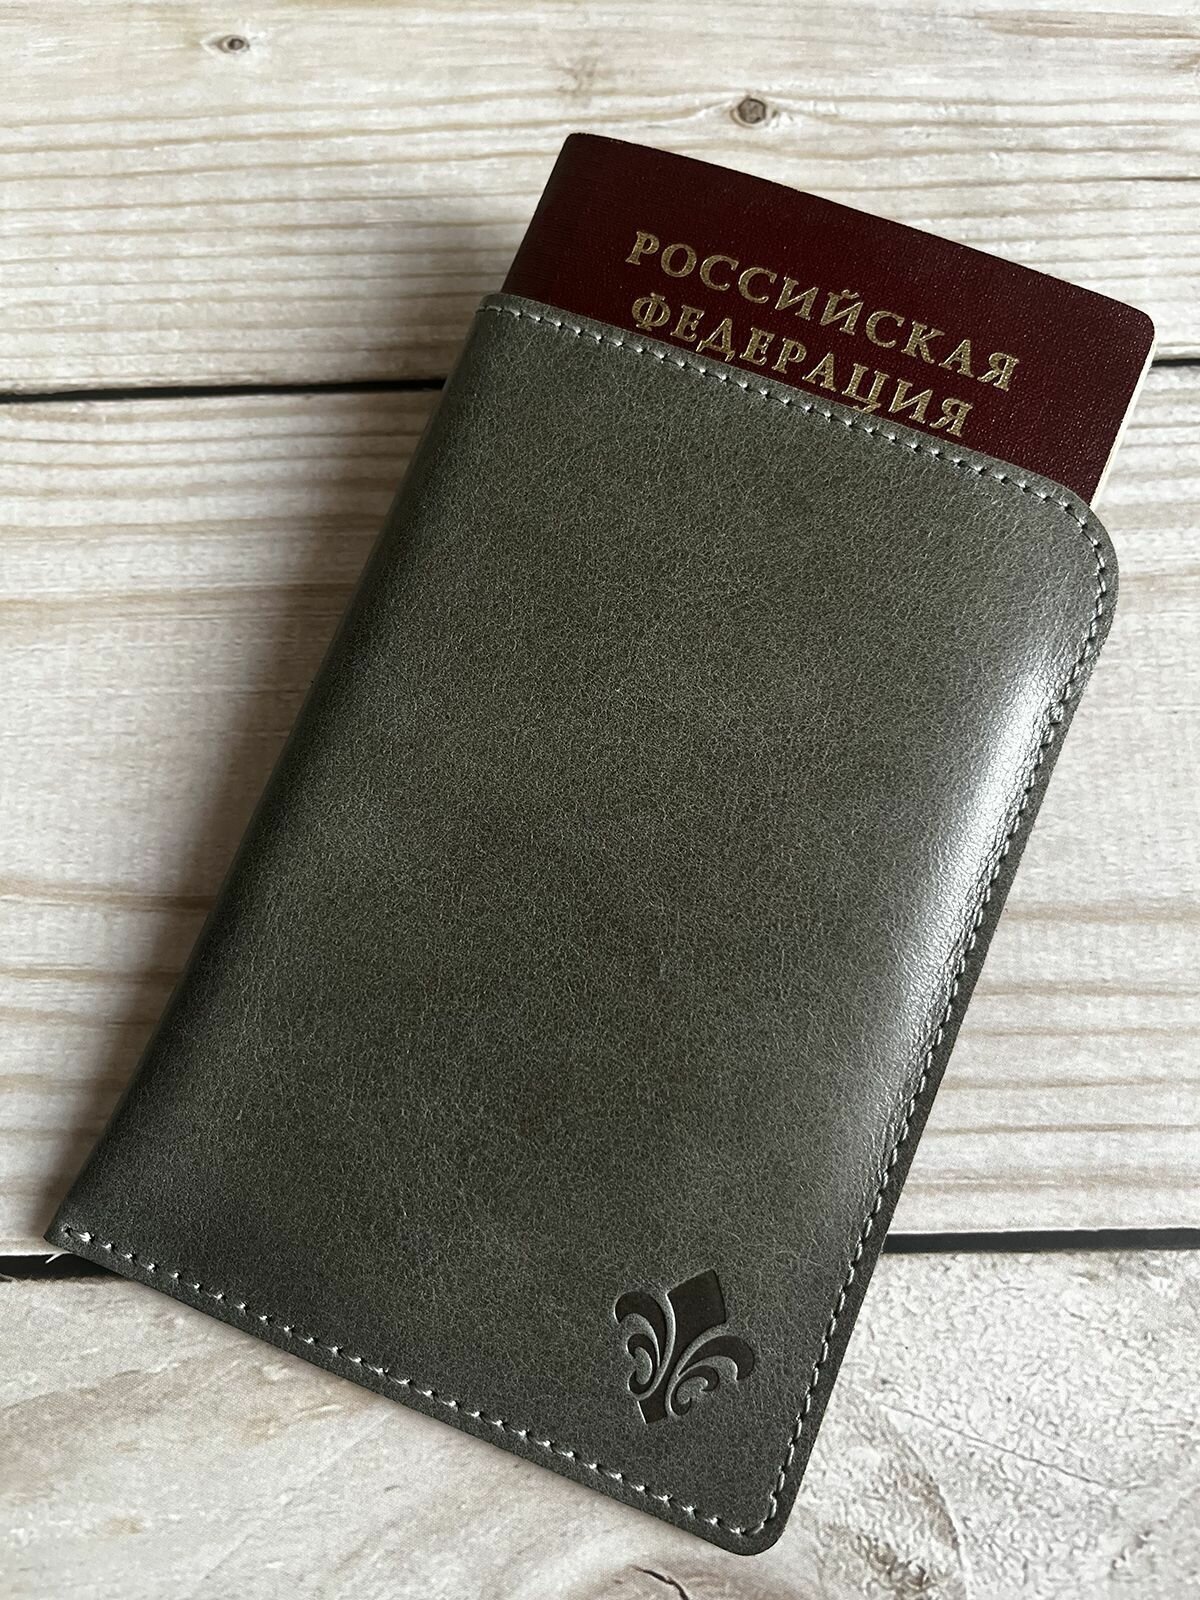 Обложка-карман для паспорта